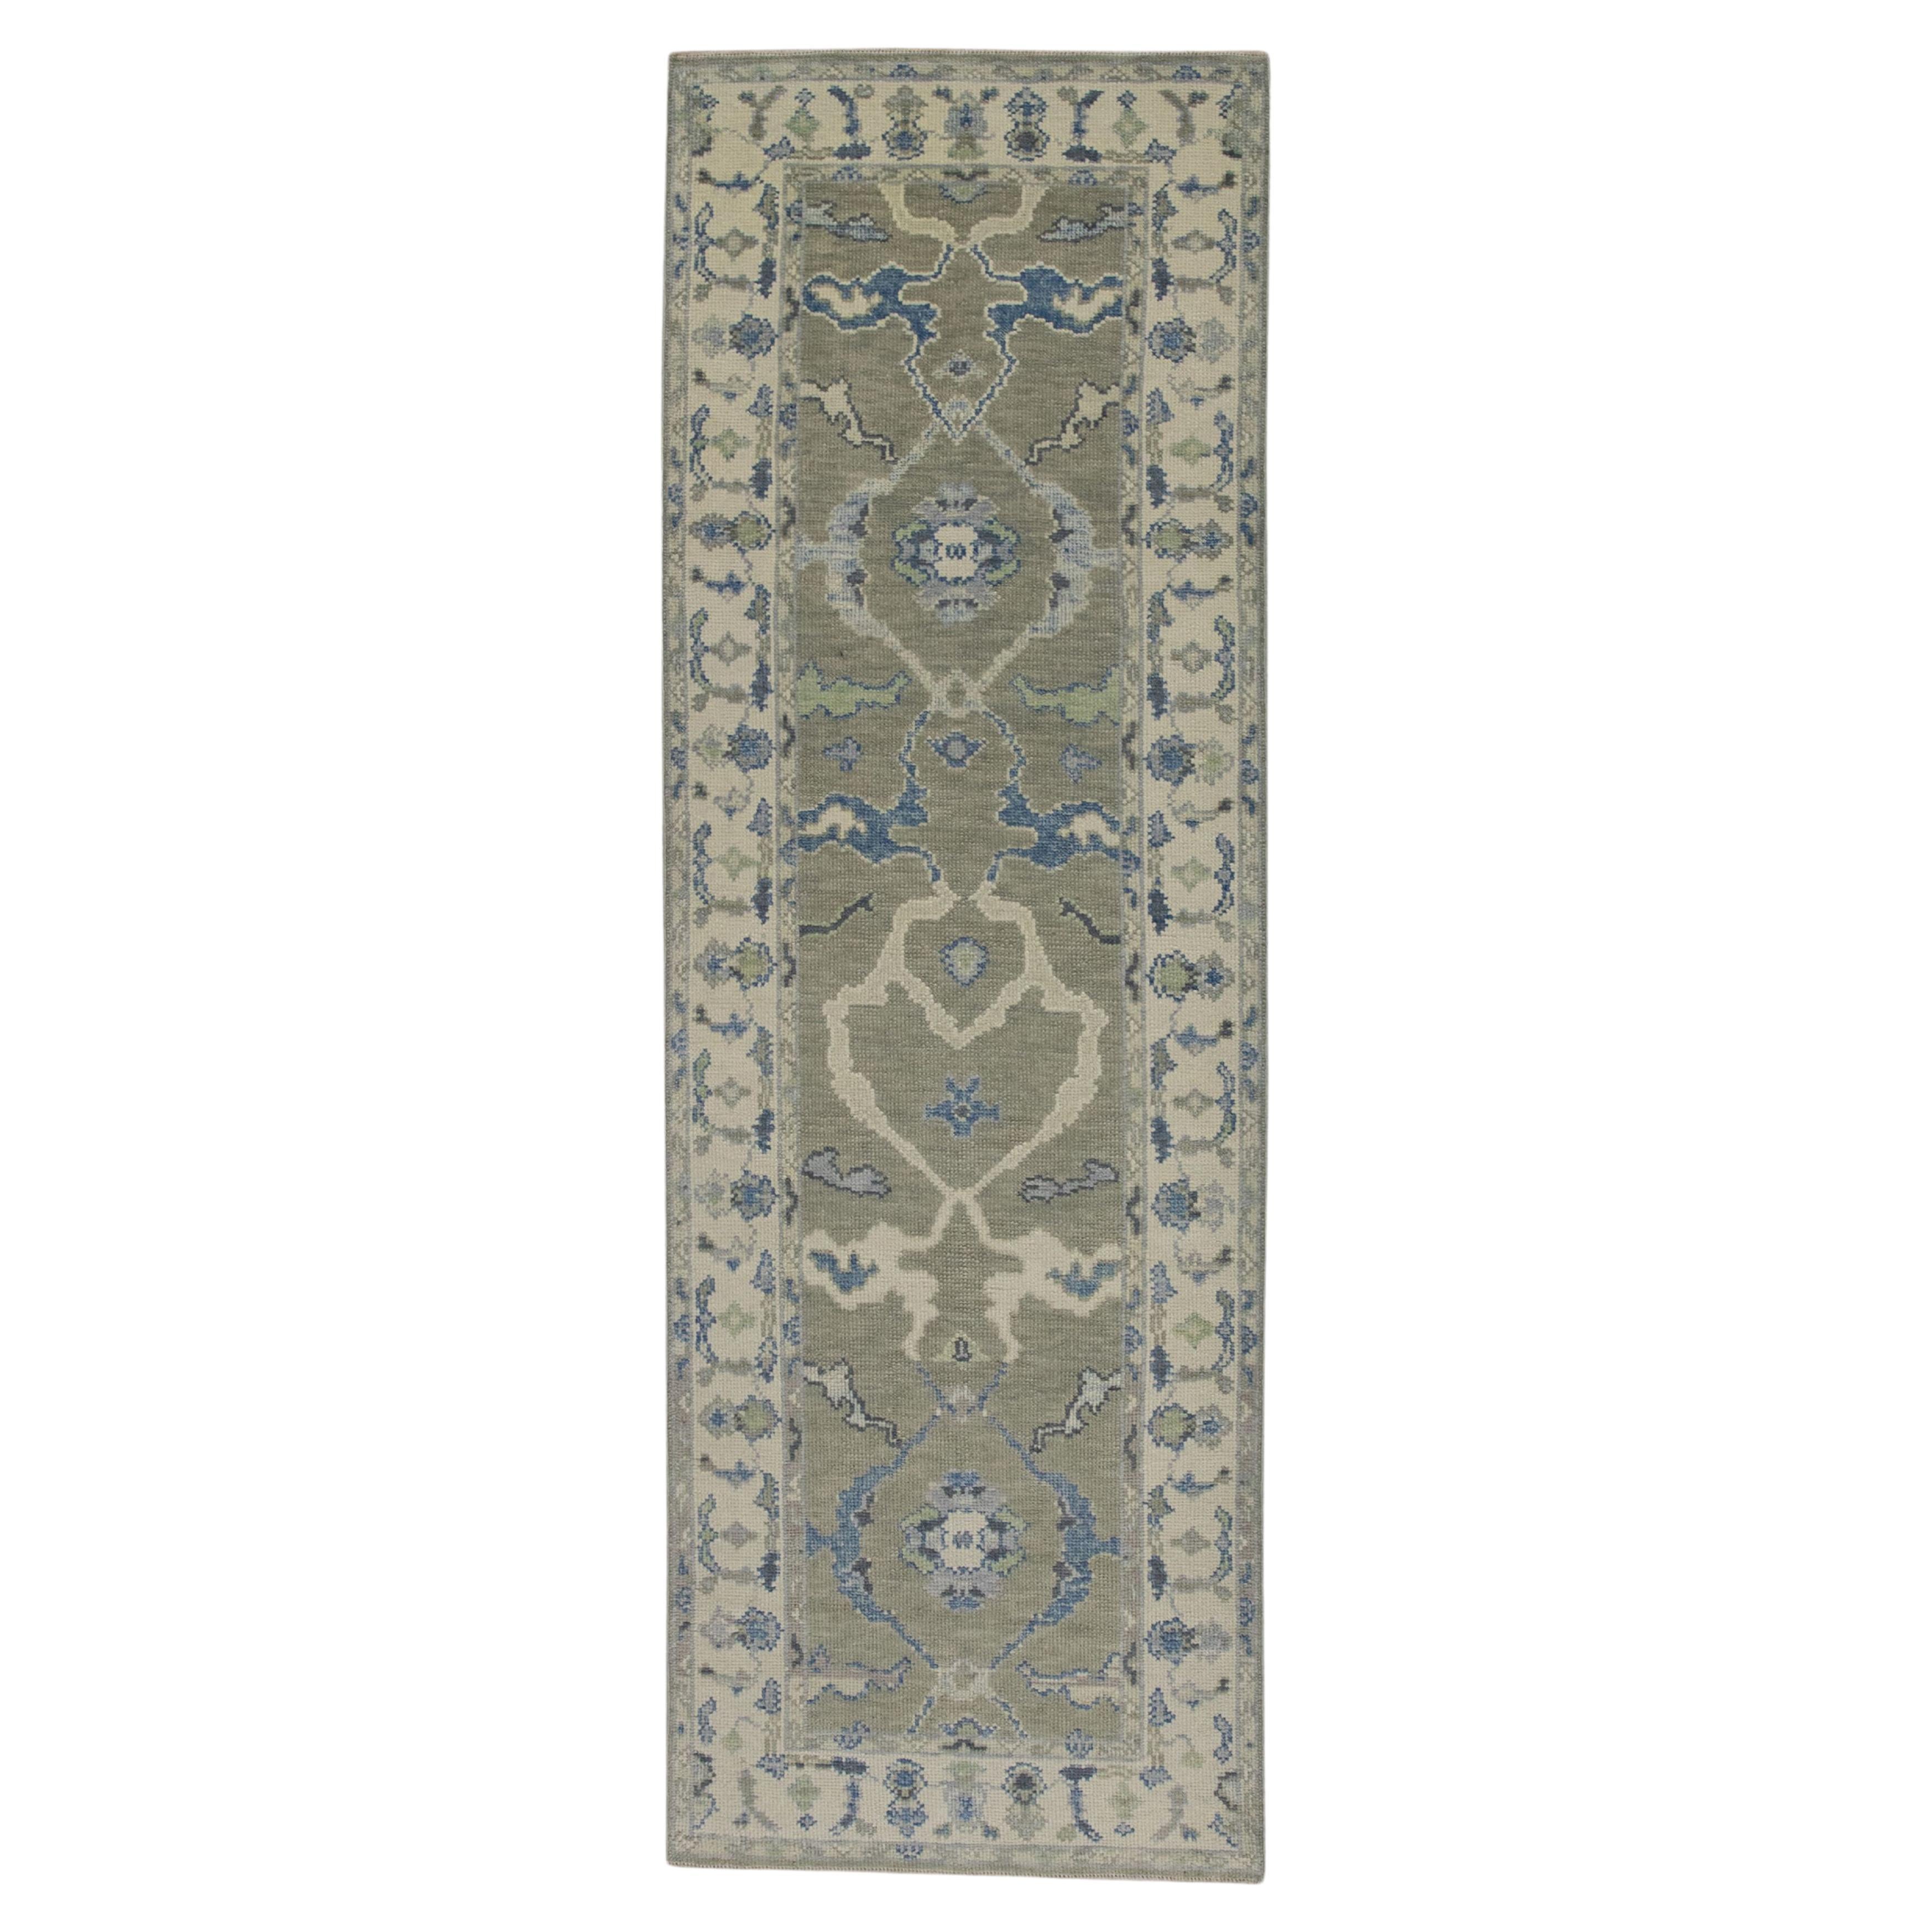 Handgewebter türkischer Oushak-Teppich aus Wolle 3'x 8'7"